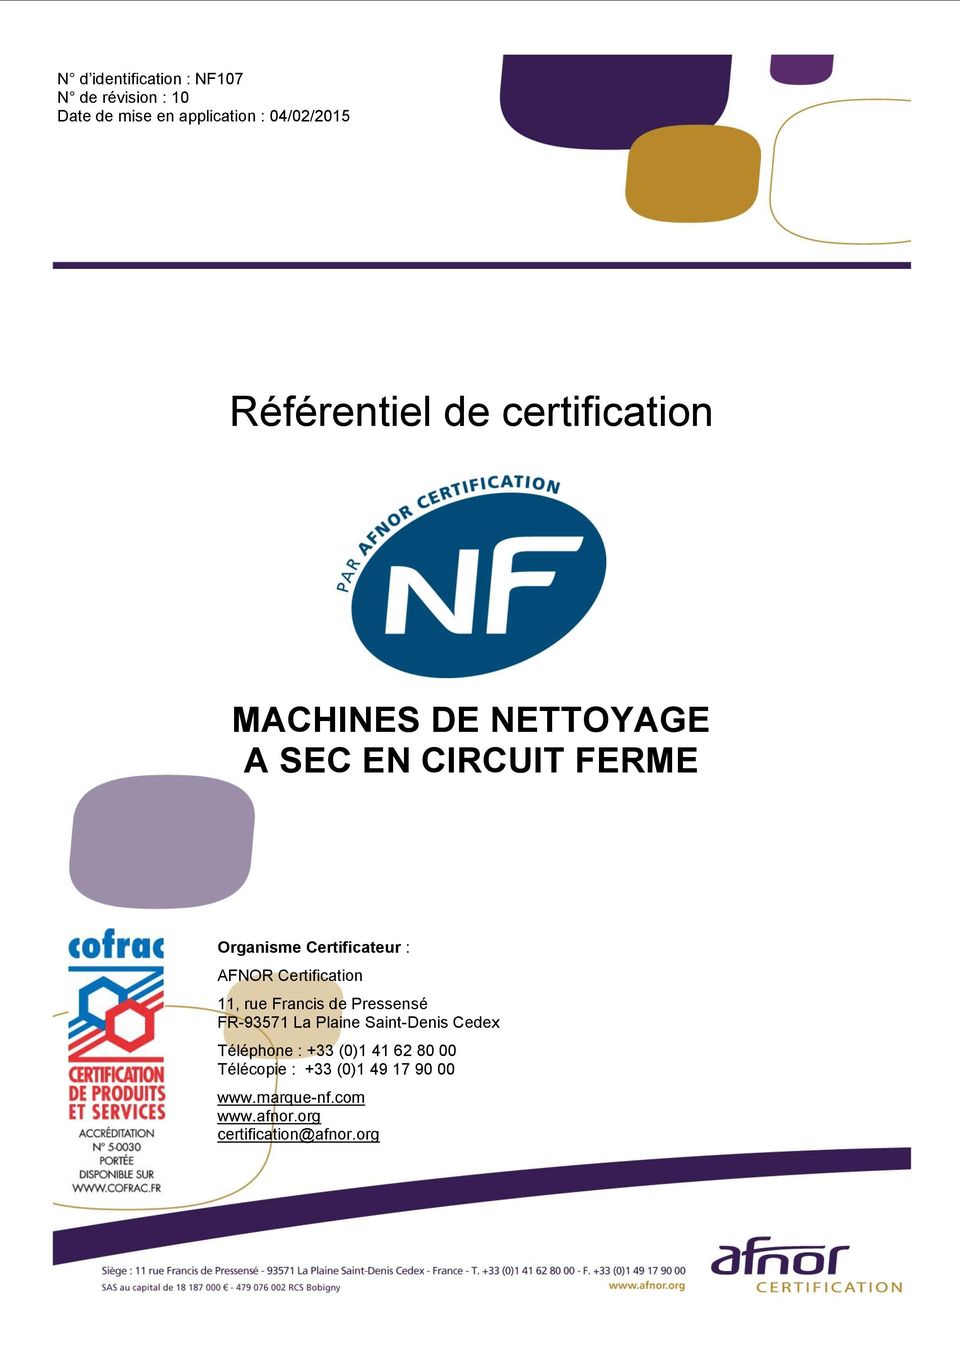 Certification 11, rue Francis de Pressensé FR-93571 La Plaine Saint-Denis Cedex Téléphone : +33